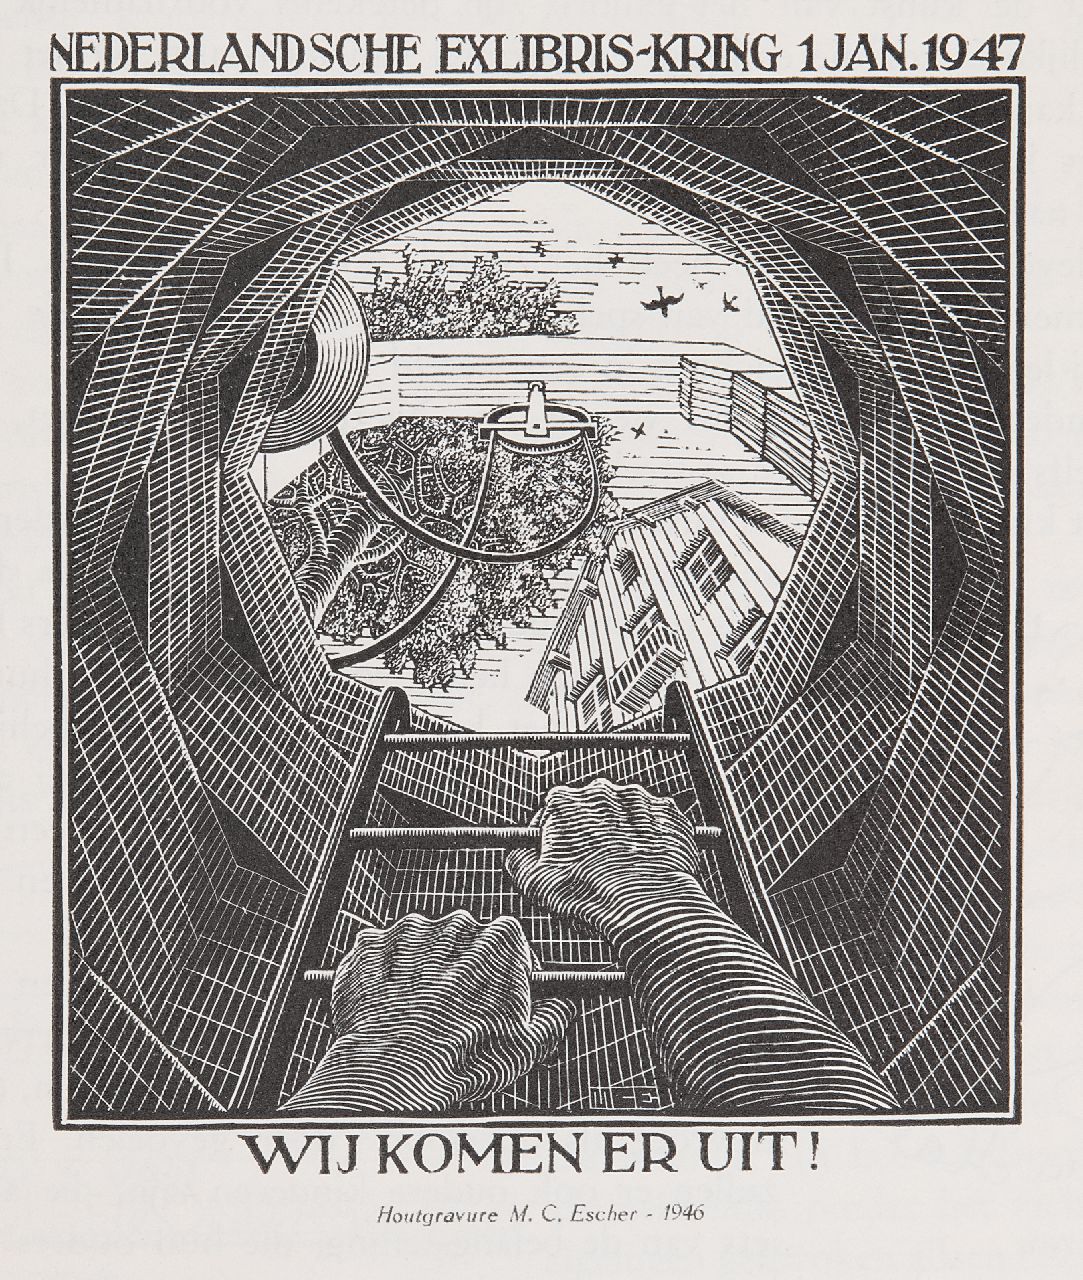 Escher M.C.  | 'Maurits' Cornelis Escher | Grafiek te koop aangeboden | Wij komen er uit! Illustratie in Gedenkboek Nederlandsche Exlibris-Kring, 1947, houtgravure 12,0 x 10,0 cm